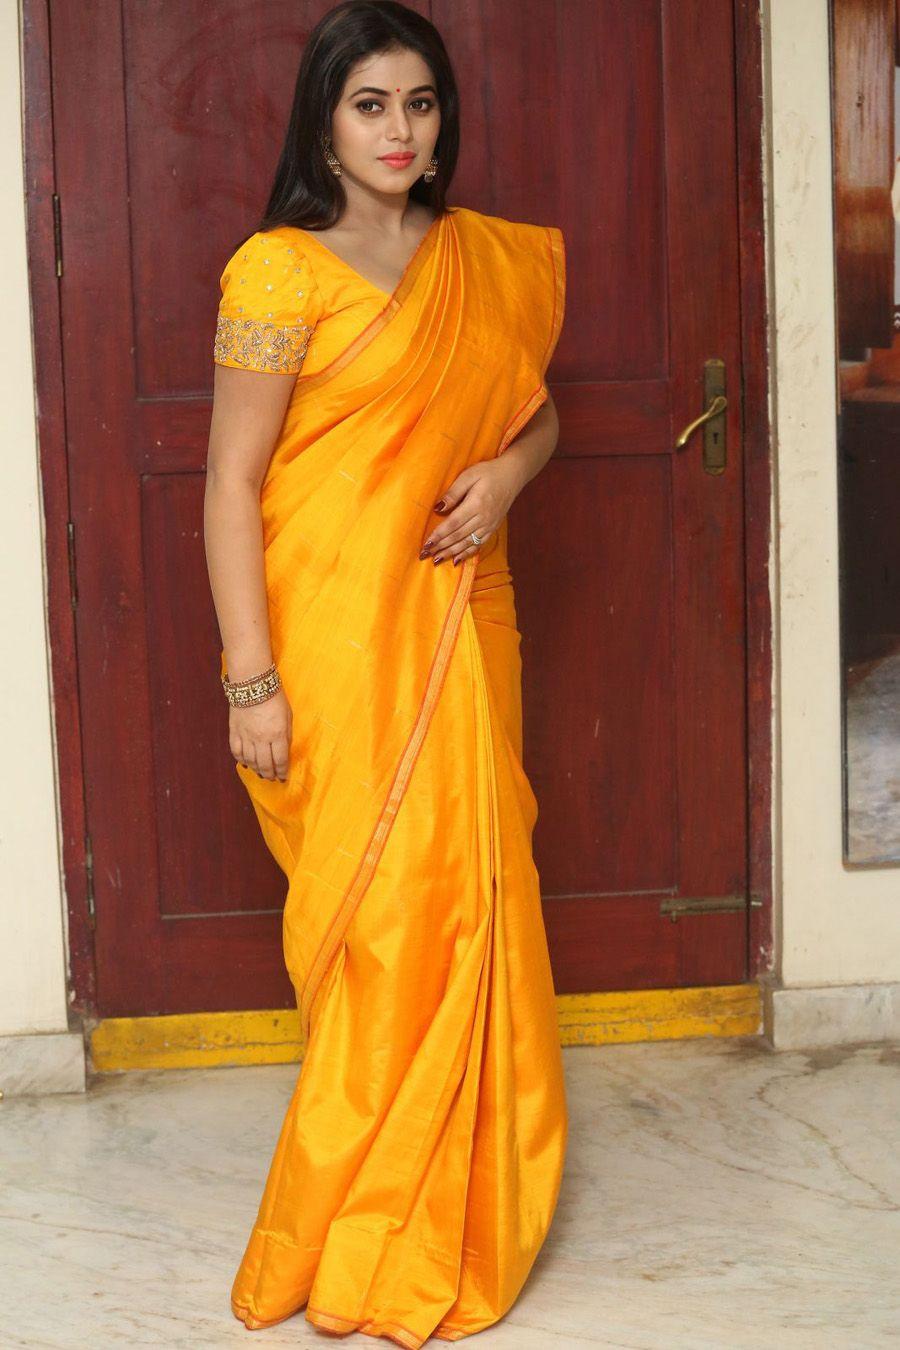 Actress Poorna Saree Photos